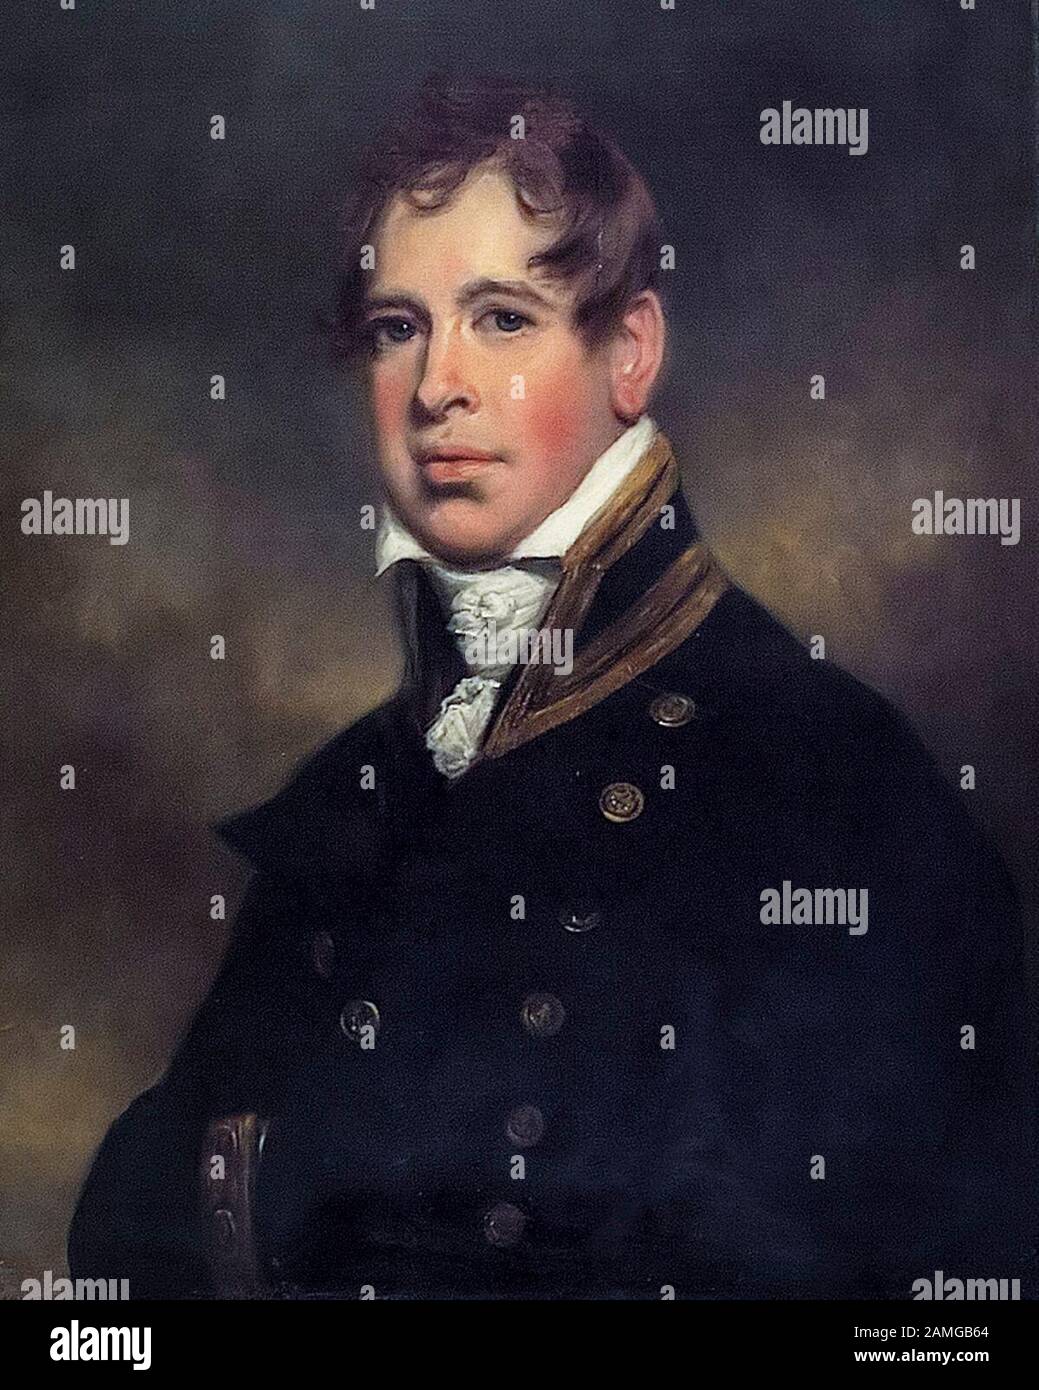 Sir William Beatty (chirurgien) (1773-1842), portrait peint par Arthur William Devis, vers 1806 Banque D'Images